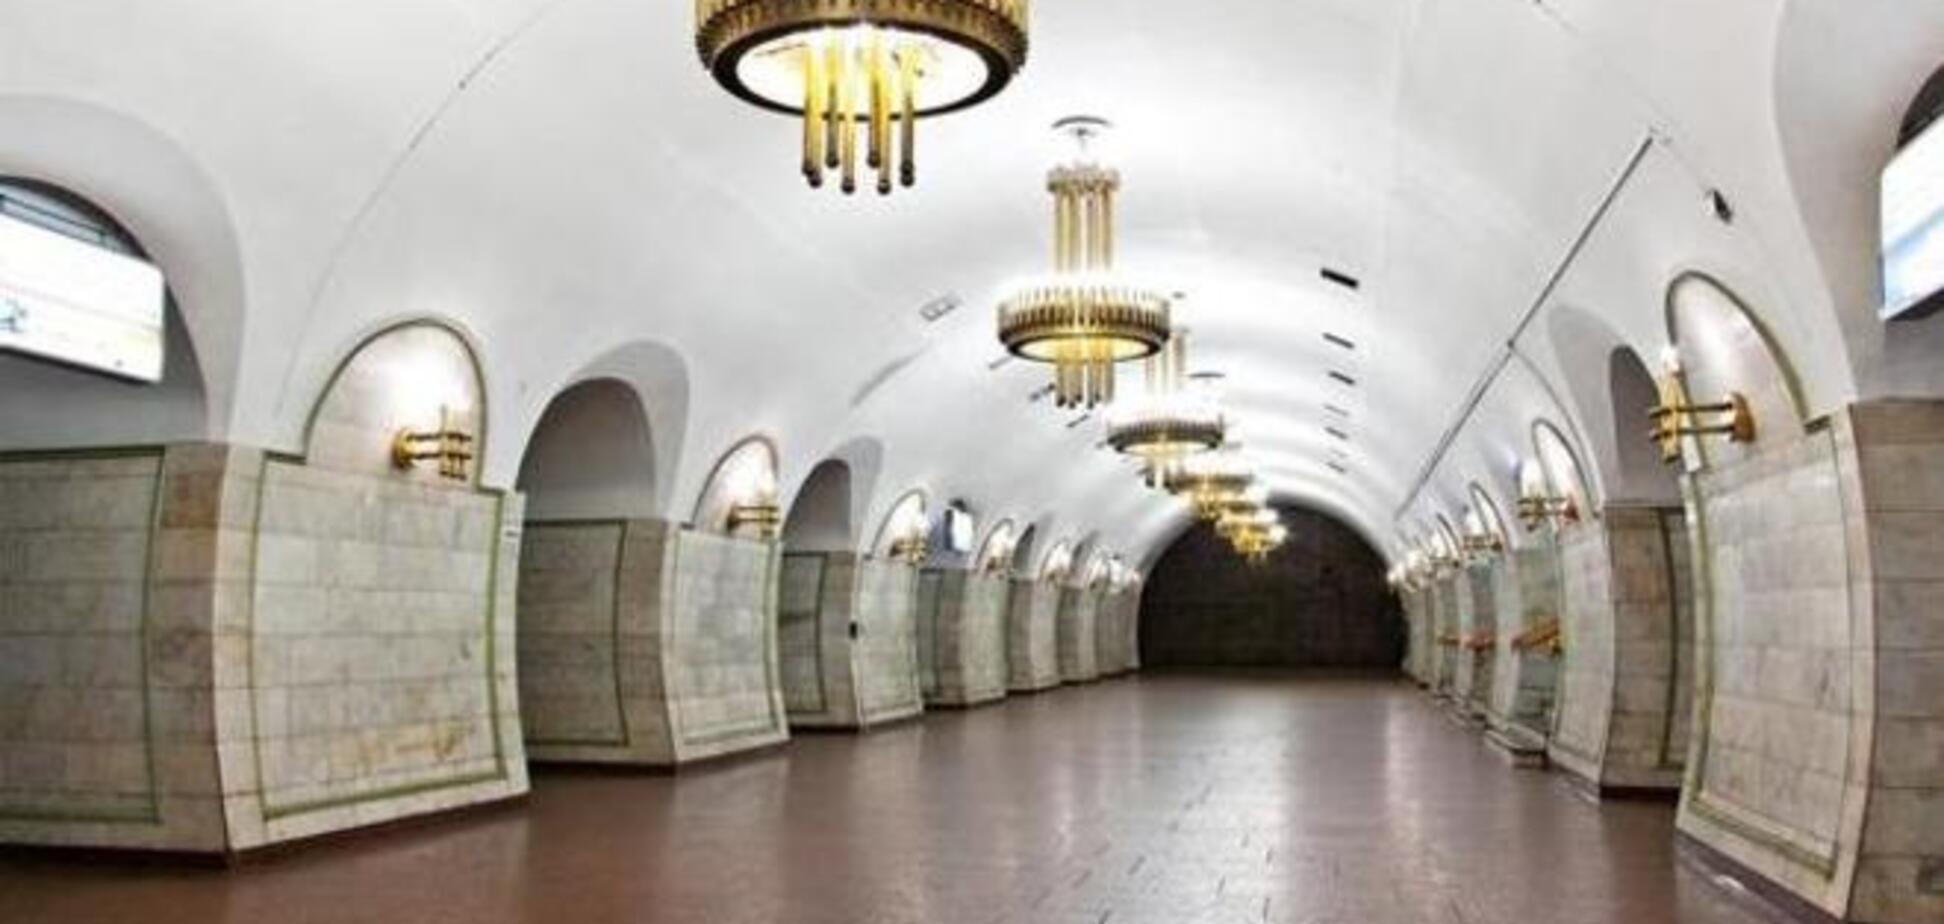 На 'заминированной' станции метро в Киеве не нашли бомбу